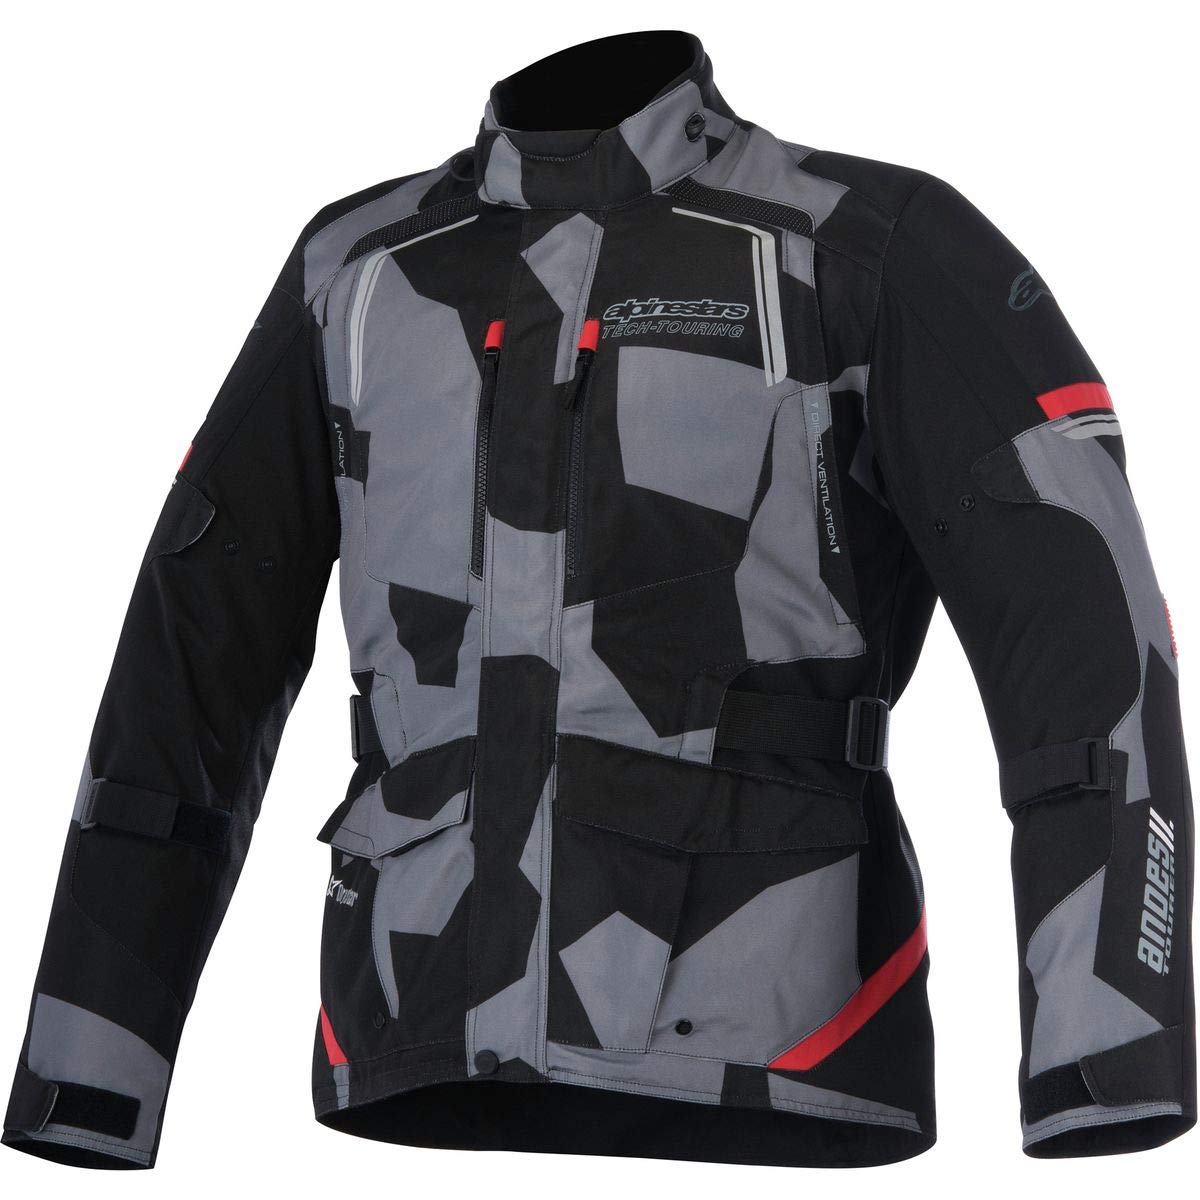 Alpinestars Men's Andes v2 Drystar Motorcycle Jacket, Black/Camo/Red, Medium